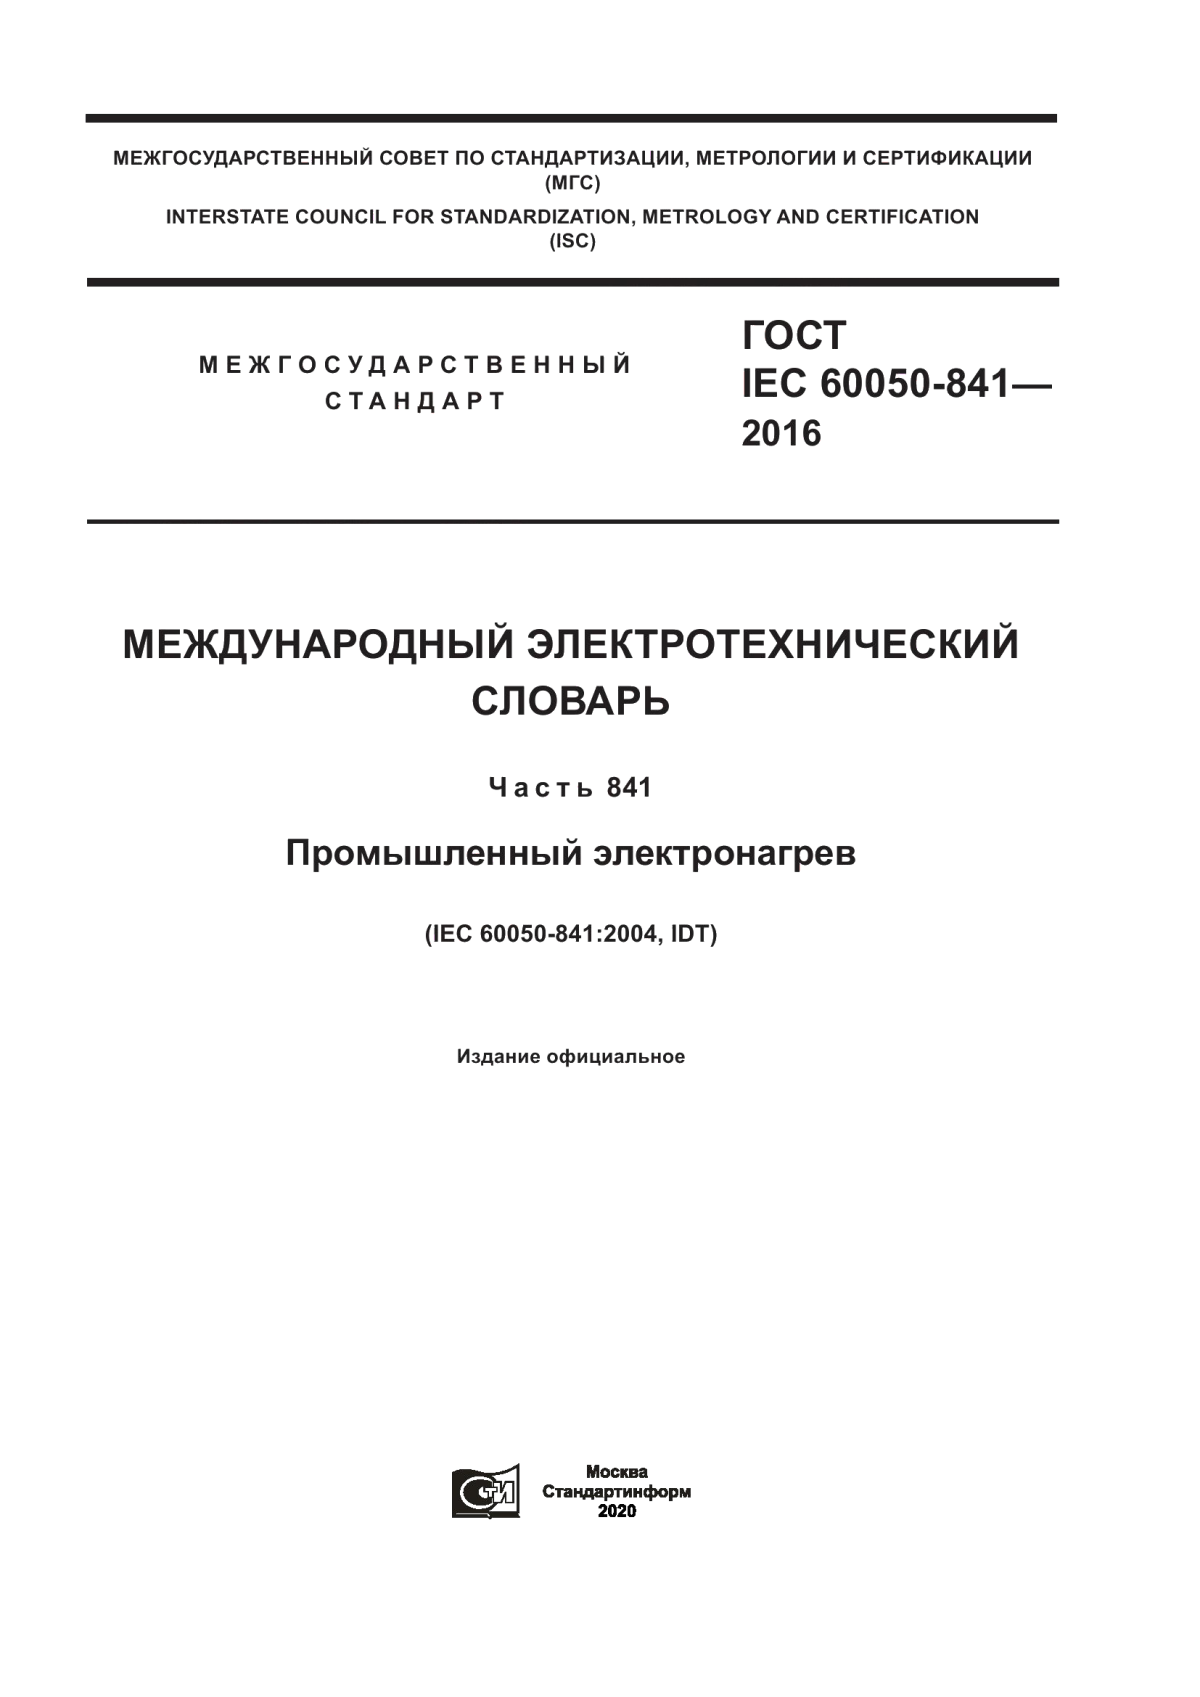 ГОСТ IEC 60050-841-2016 Международный электротехнический словарь. Часть 841. Промышленный электронагрев